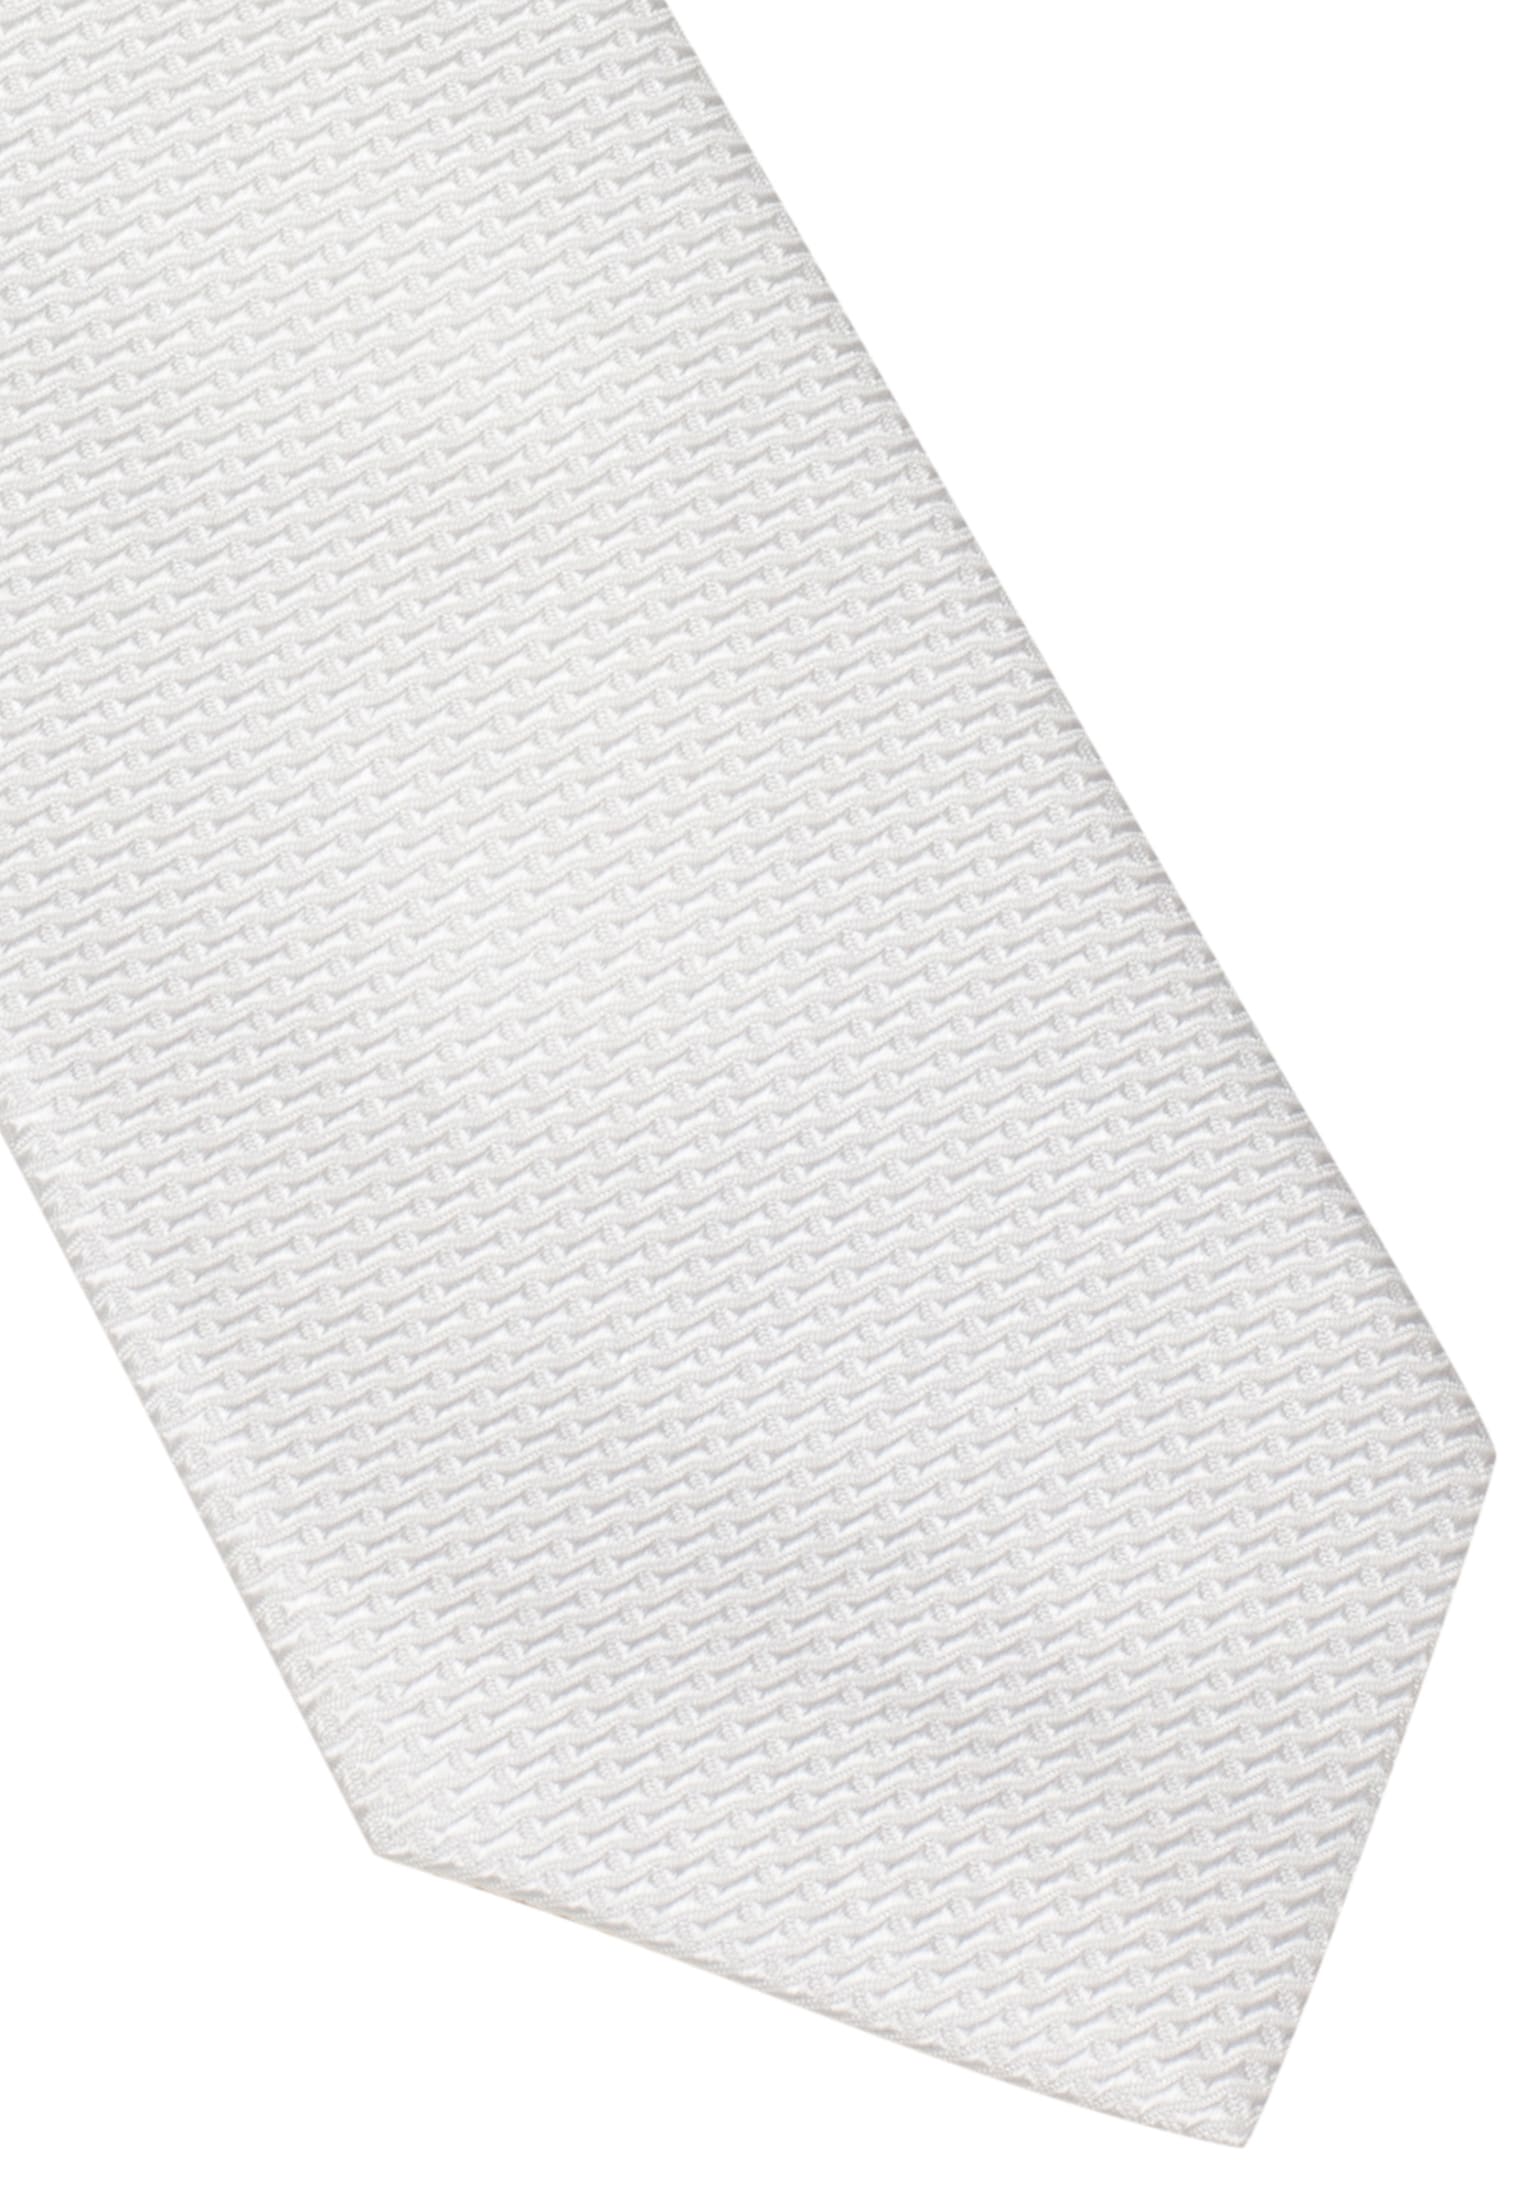 Krawatte in weiß strukturiert | weiß | 142 | 1AC01872-00-01-142 | Breite Krawatten